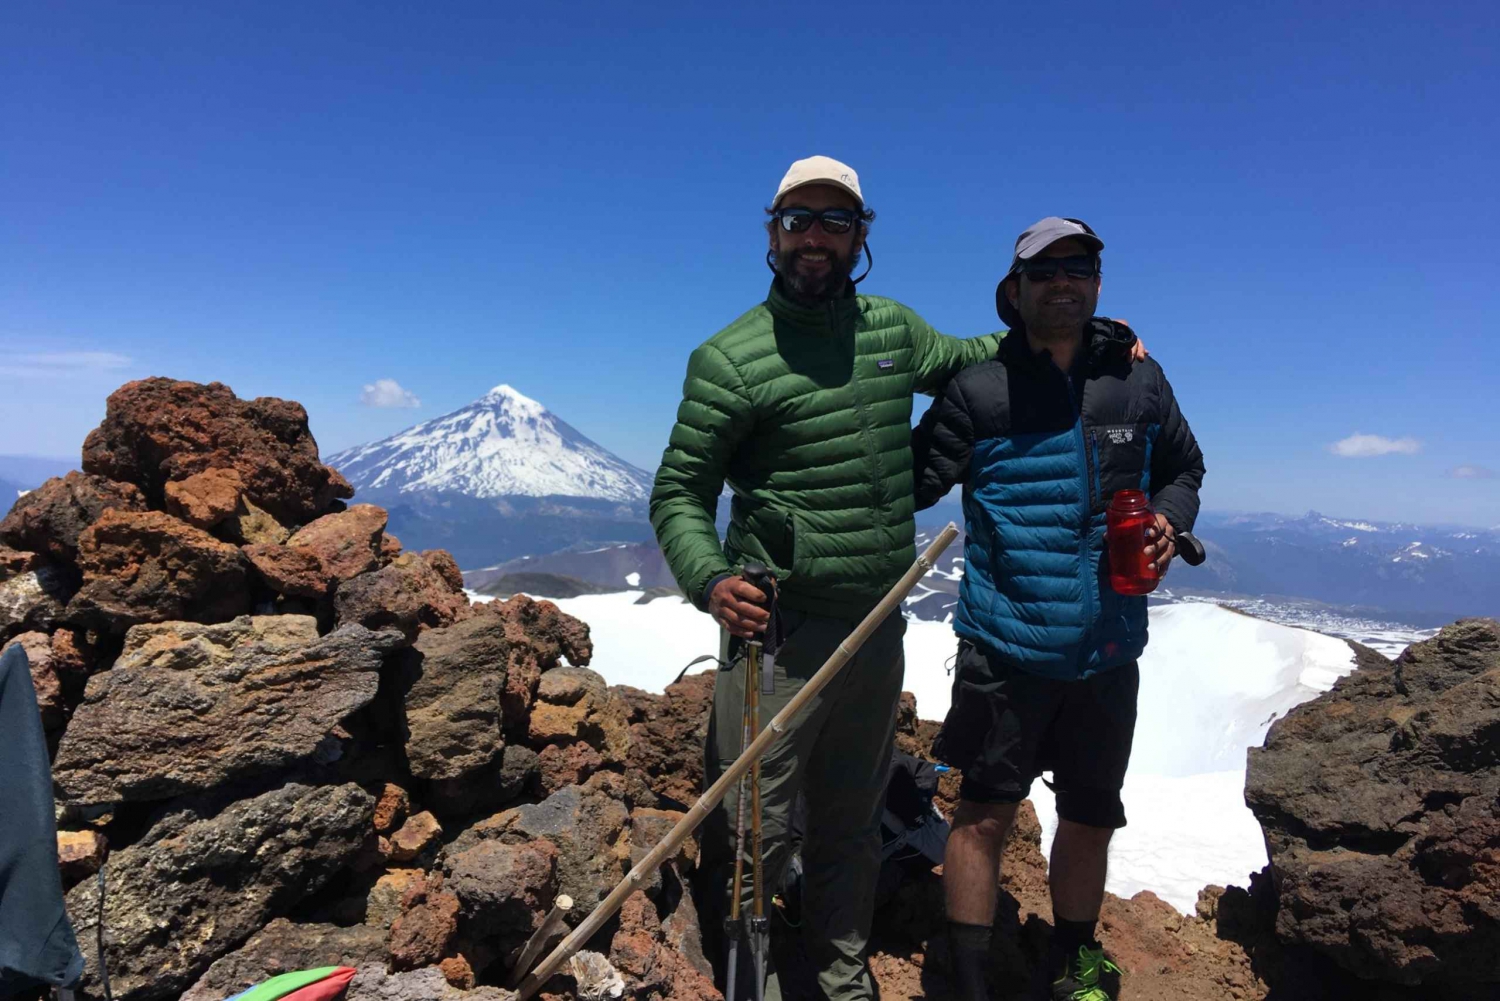 Pucon: scalata di un'intera giornata al vulcano Quetrupillan